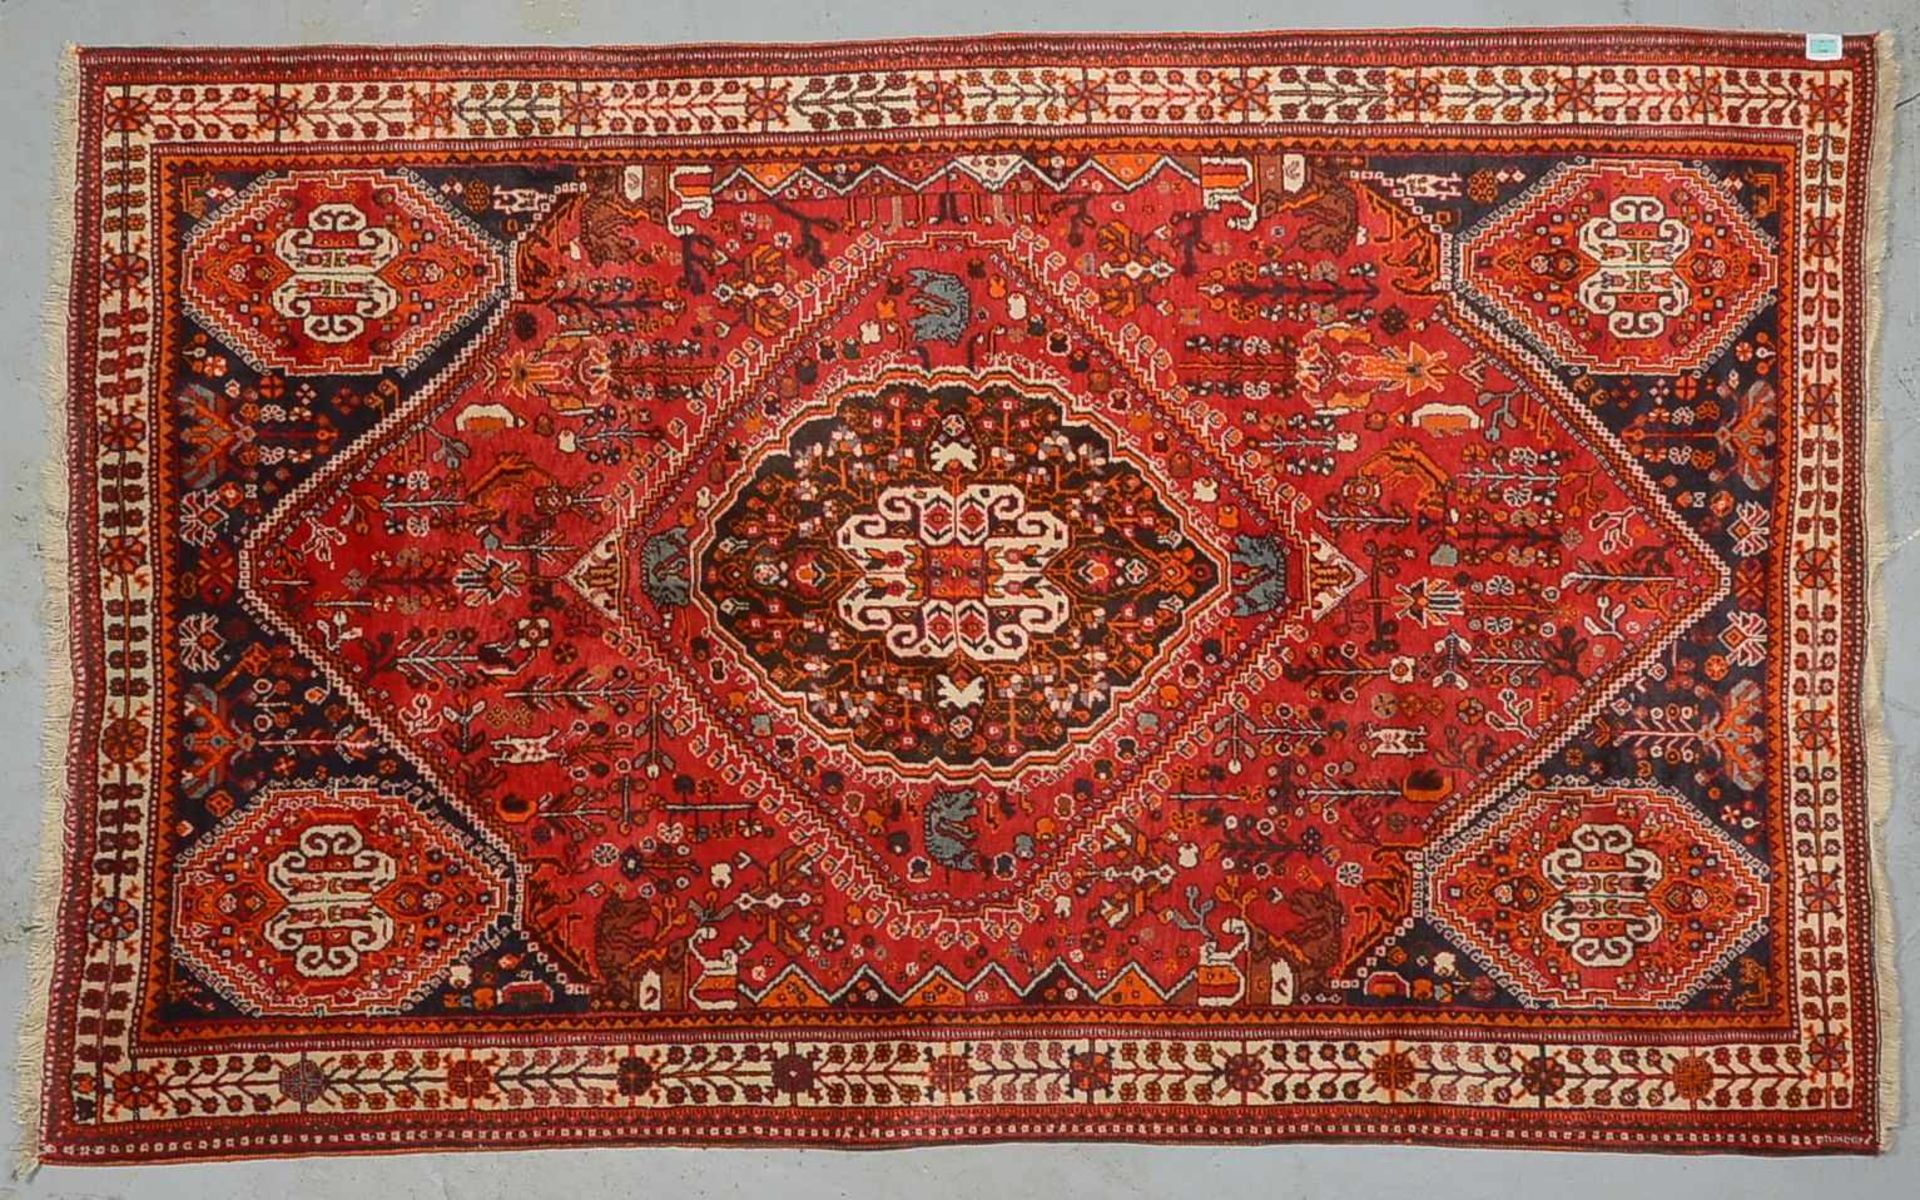 Orientteppich, Persien, ringsum komplett, Flor in einwandfreiem Zustand, sauber und wohnfertig; Maße